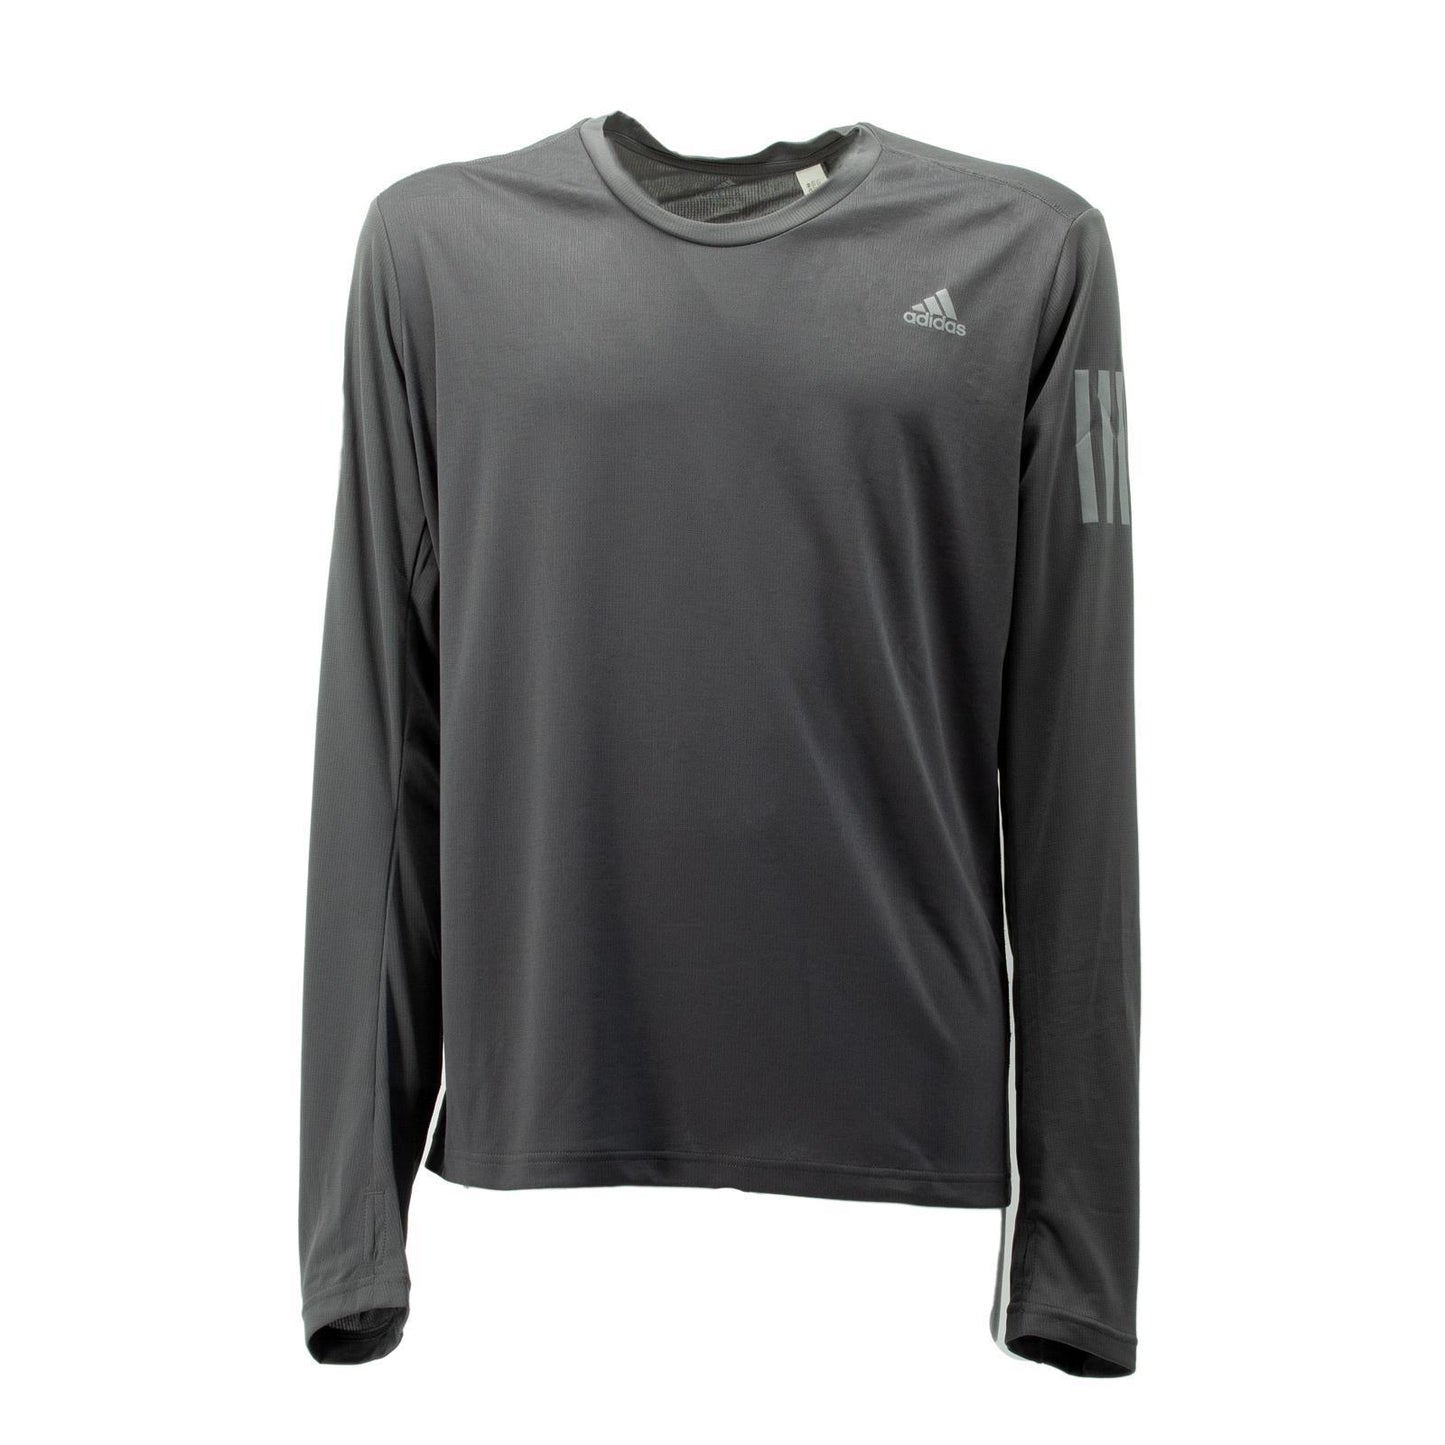 Adidas Own The Run Running Laufshirt Longsleeve Langarm Shirt Herren grau DZ2125 2XL